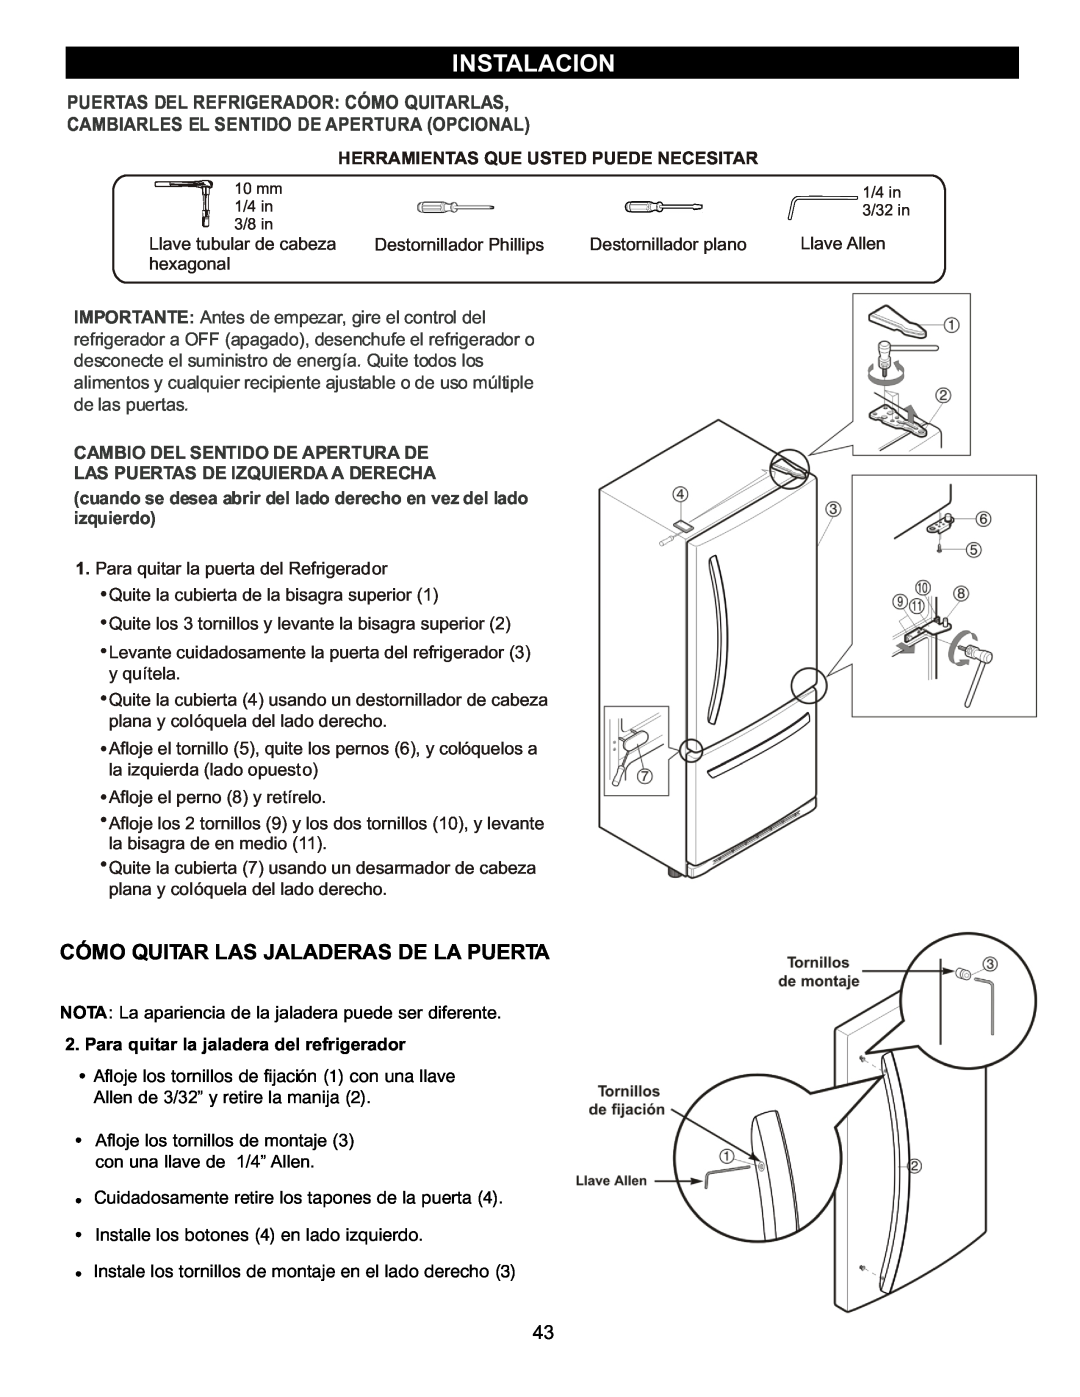 LG Electronics LDC2272 Instalacion, Cómo Quitar Las Jaladeras De La Puerta, Puertas Del Refrigerador: Cómo Quitarlas 